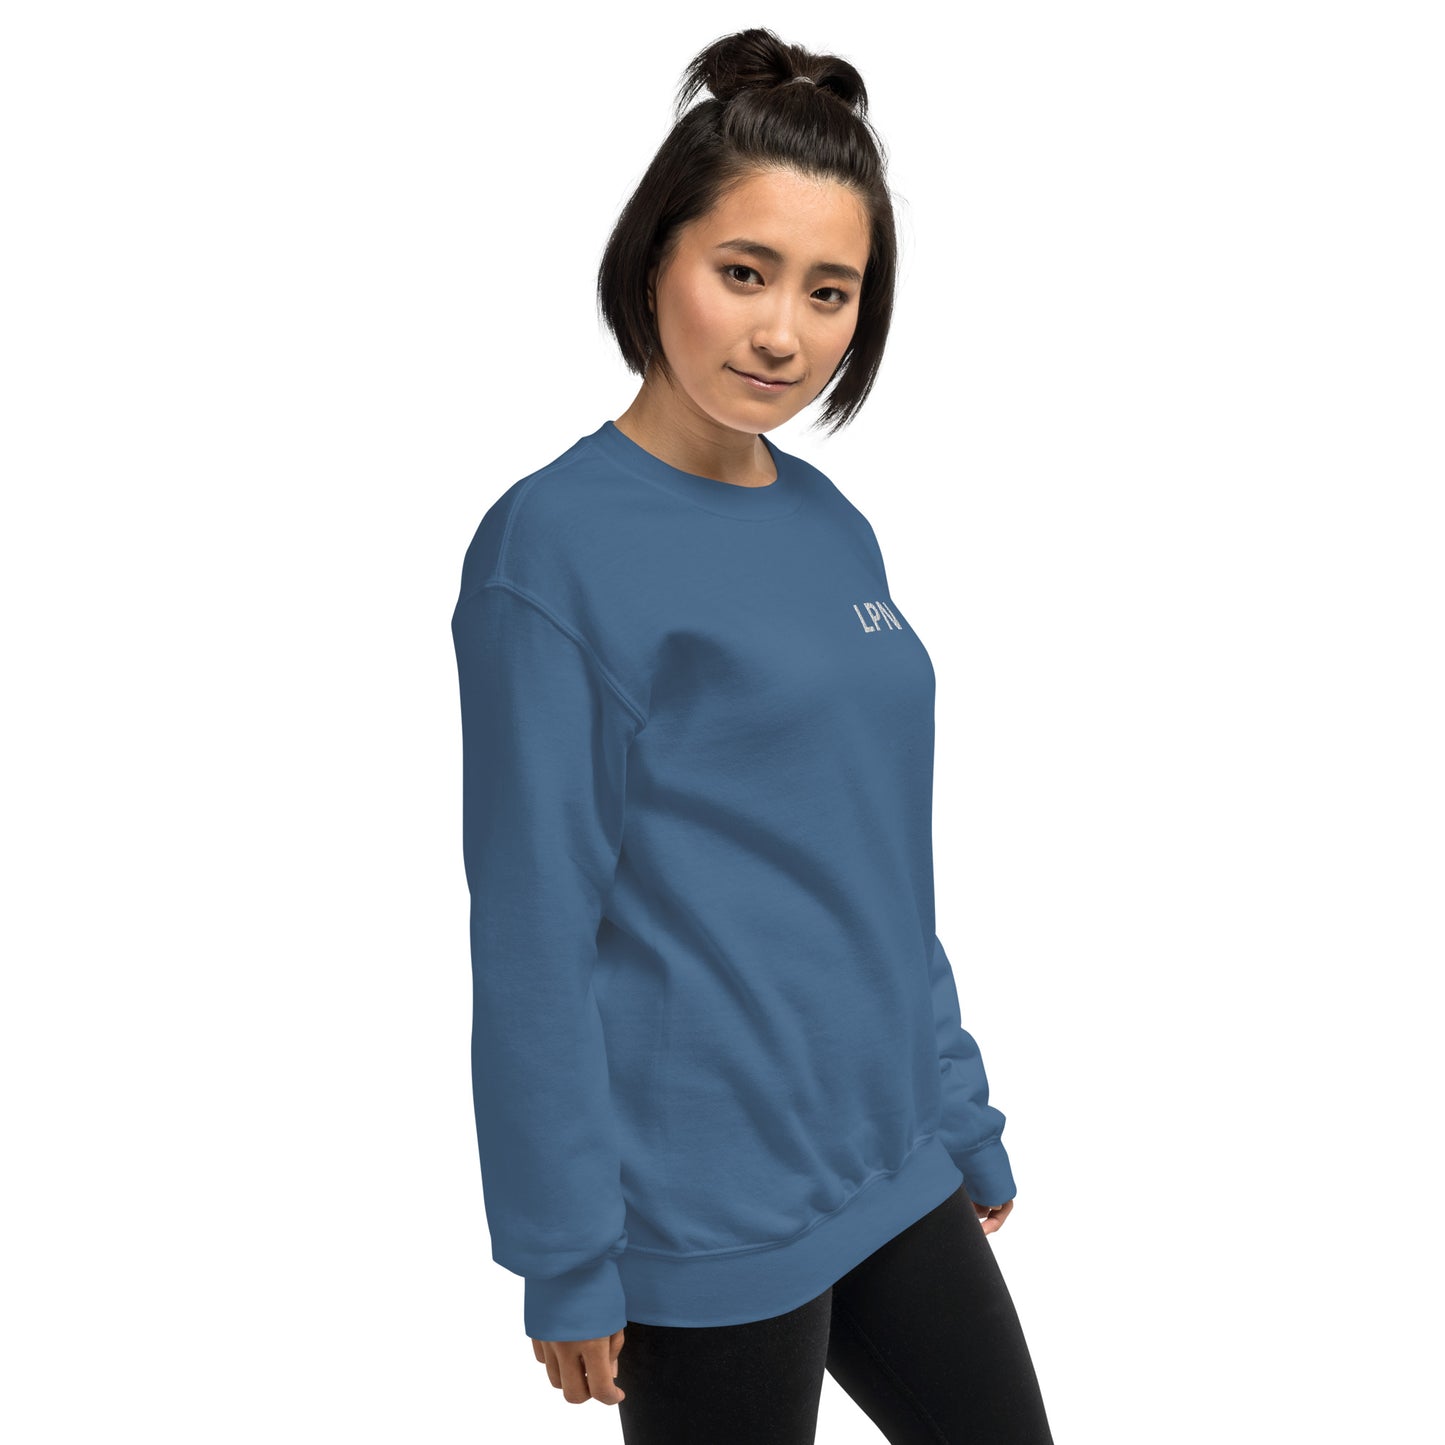 LPN embroidered Unisex Sweatshirt